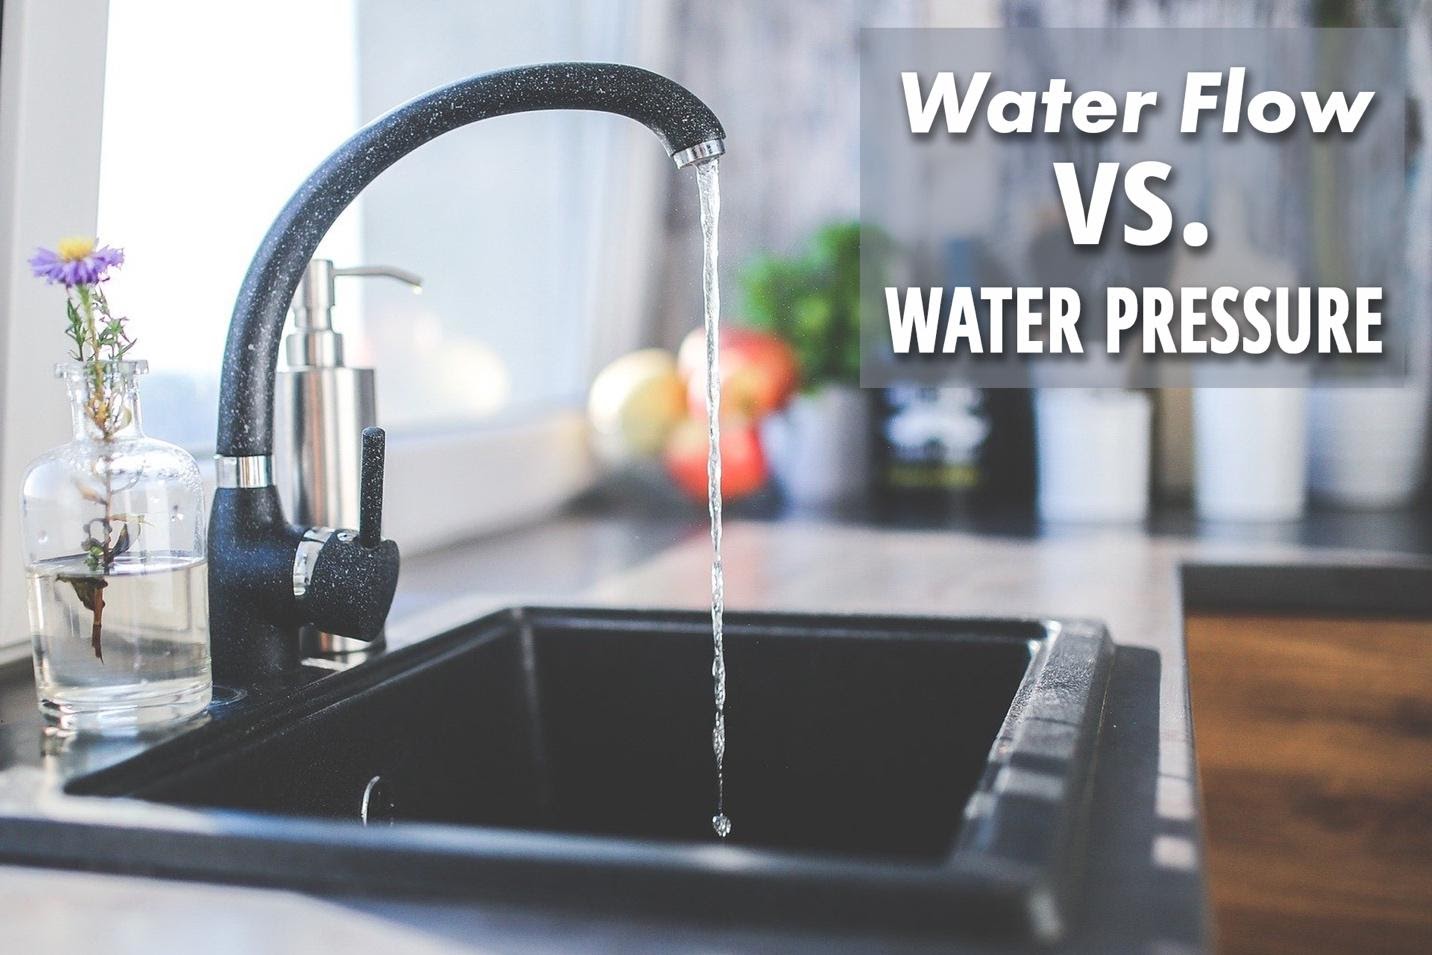 Water flow vs water pressure